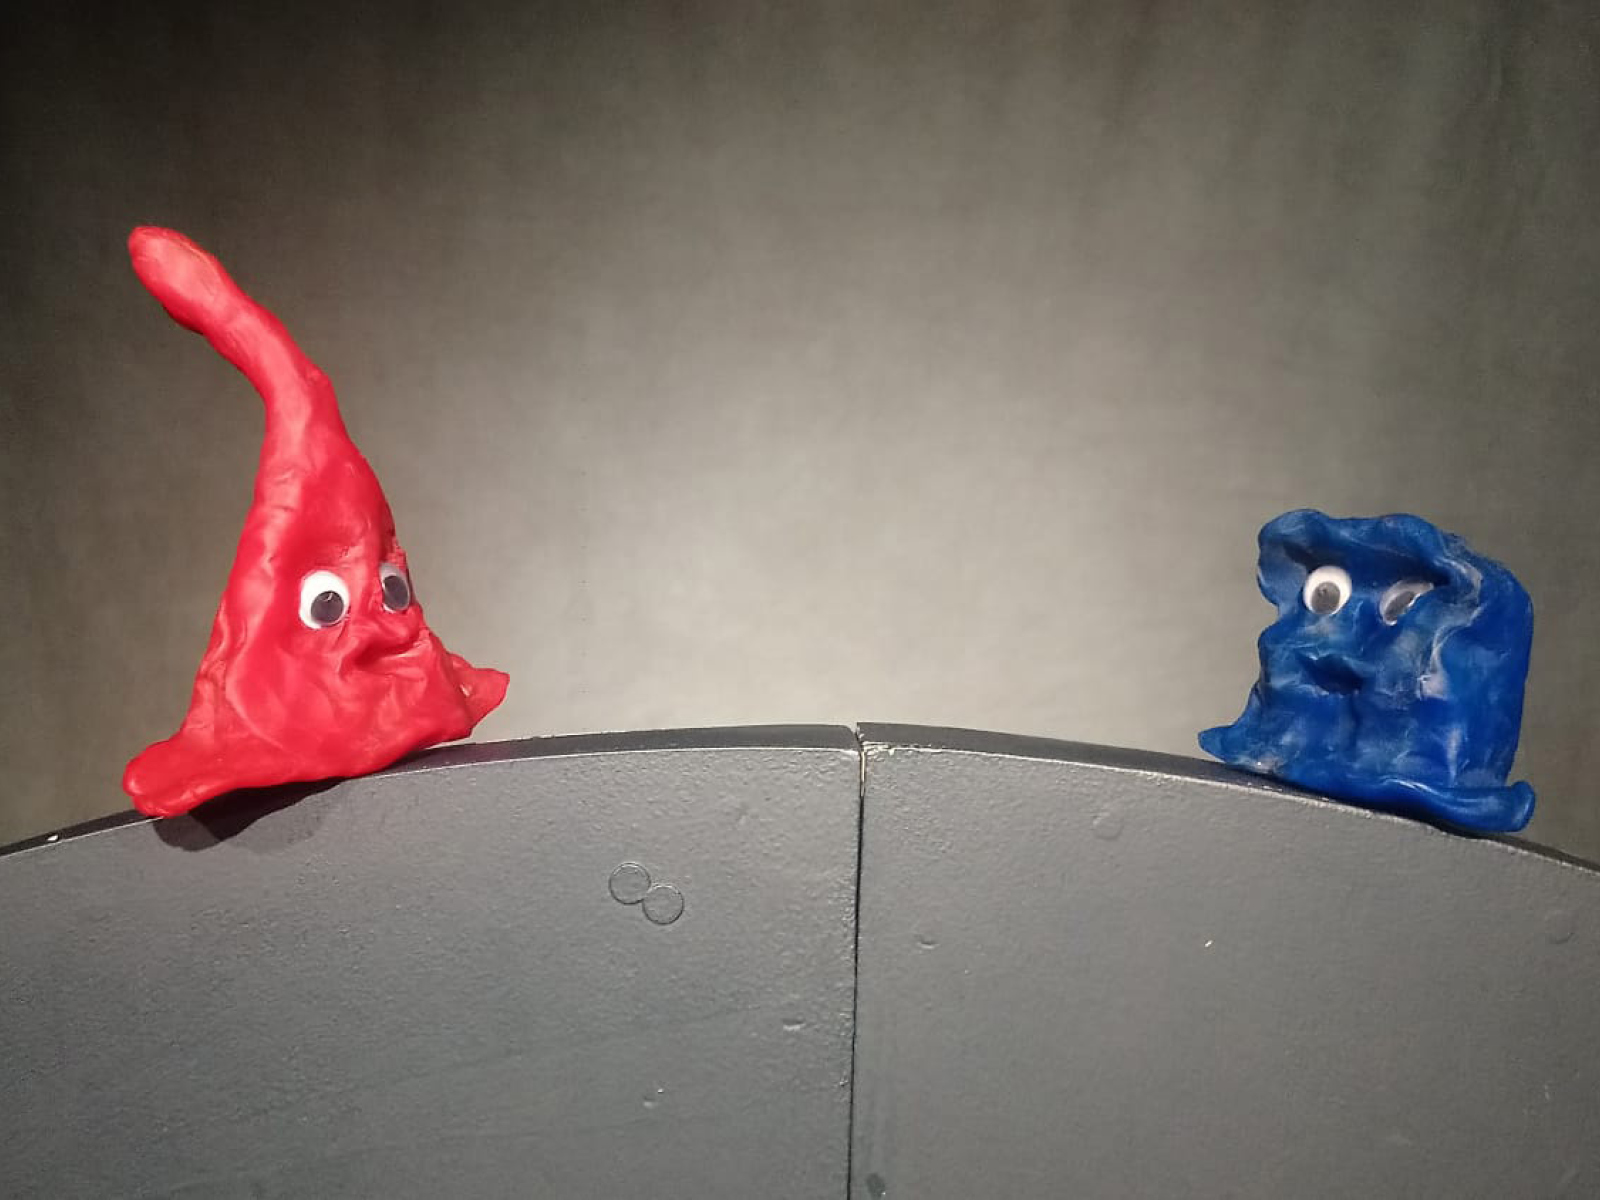 Ein blaue und eine rote Knetfigur mit Augen nebeneinander